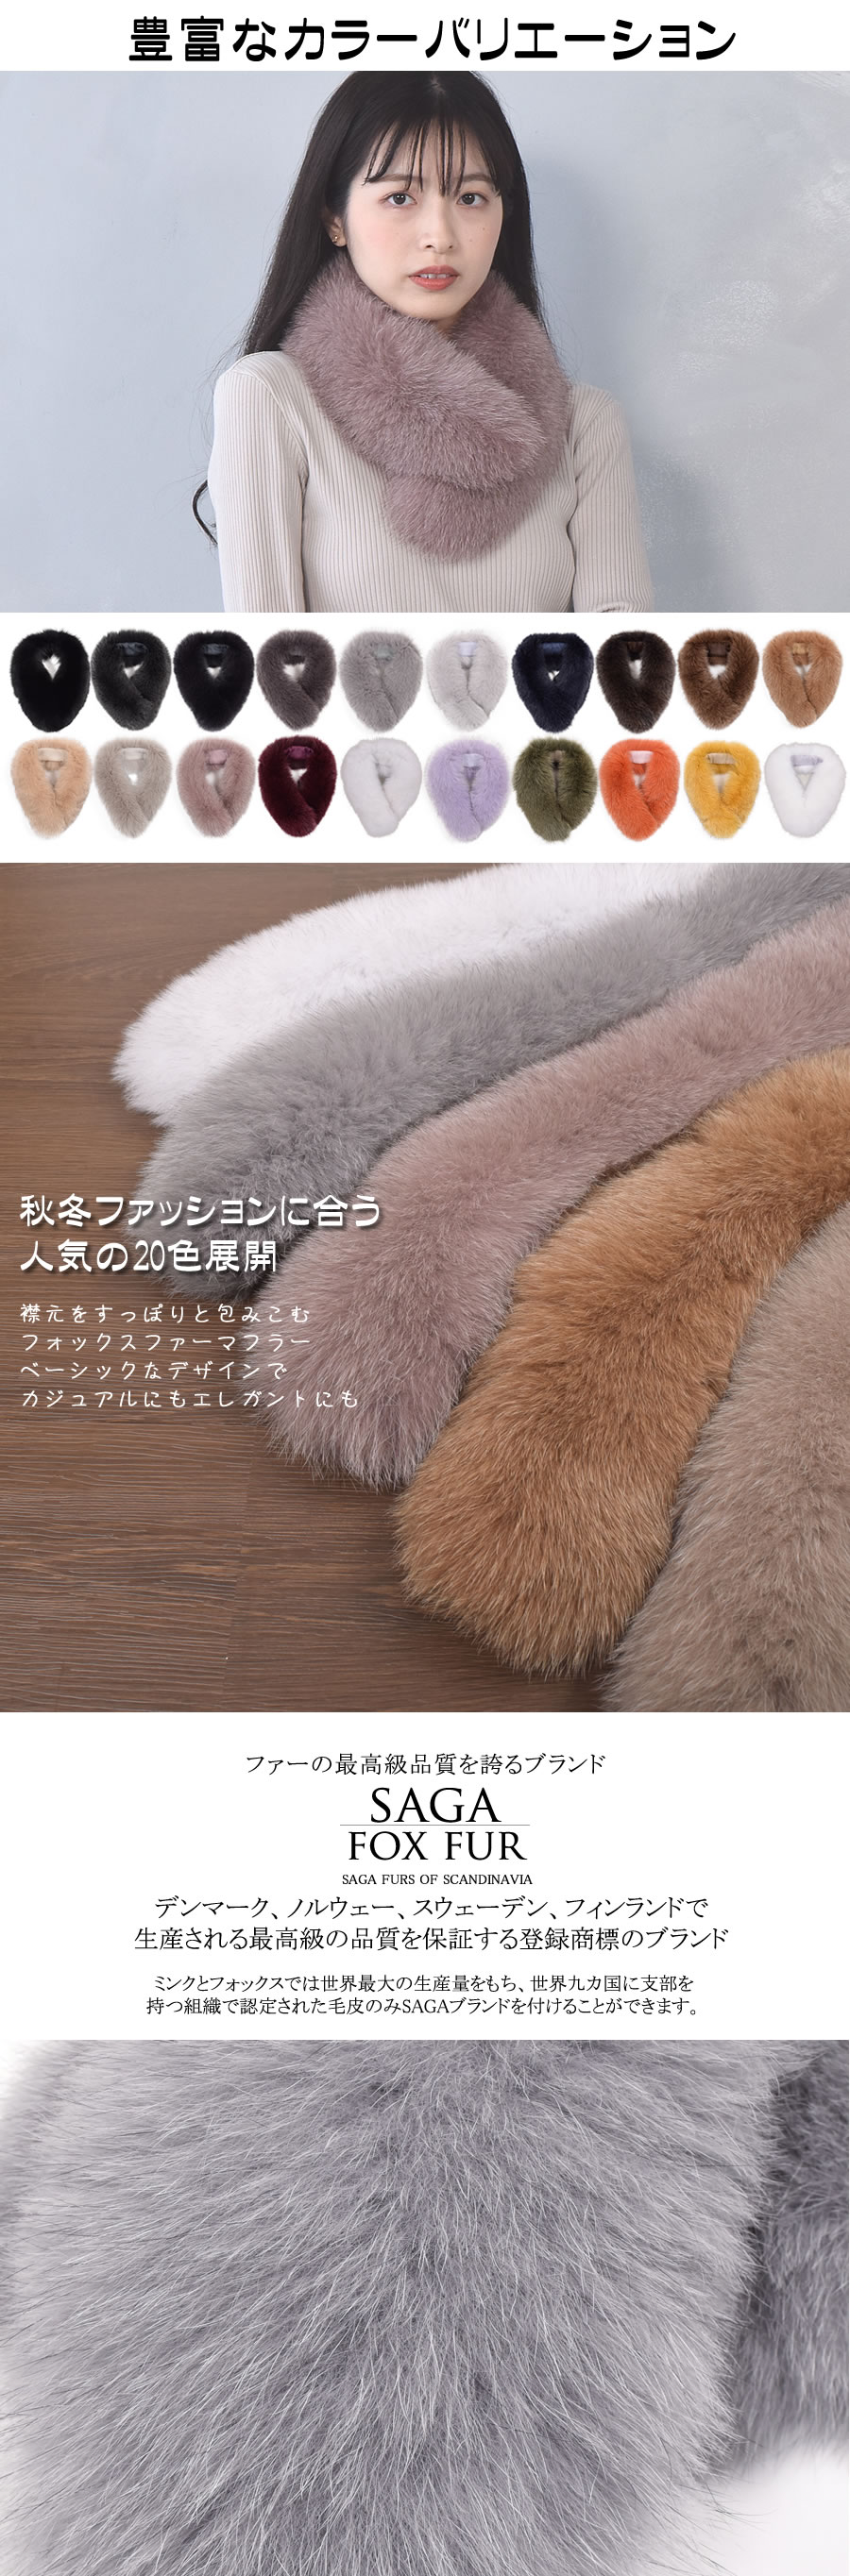 日本製 SAGA フォックス ファー マフラー クリップ付 毛皮 カラー ティ 